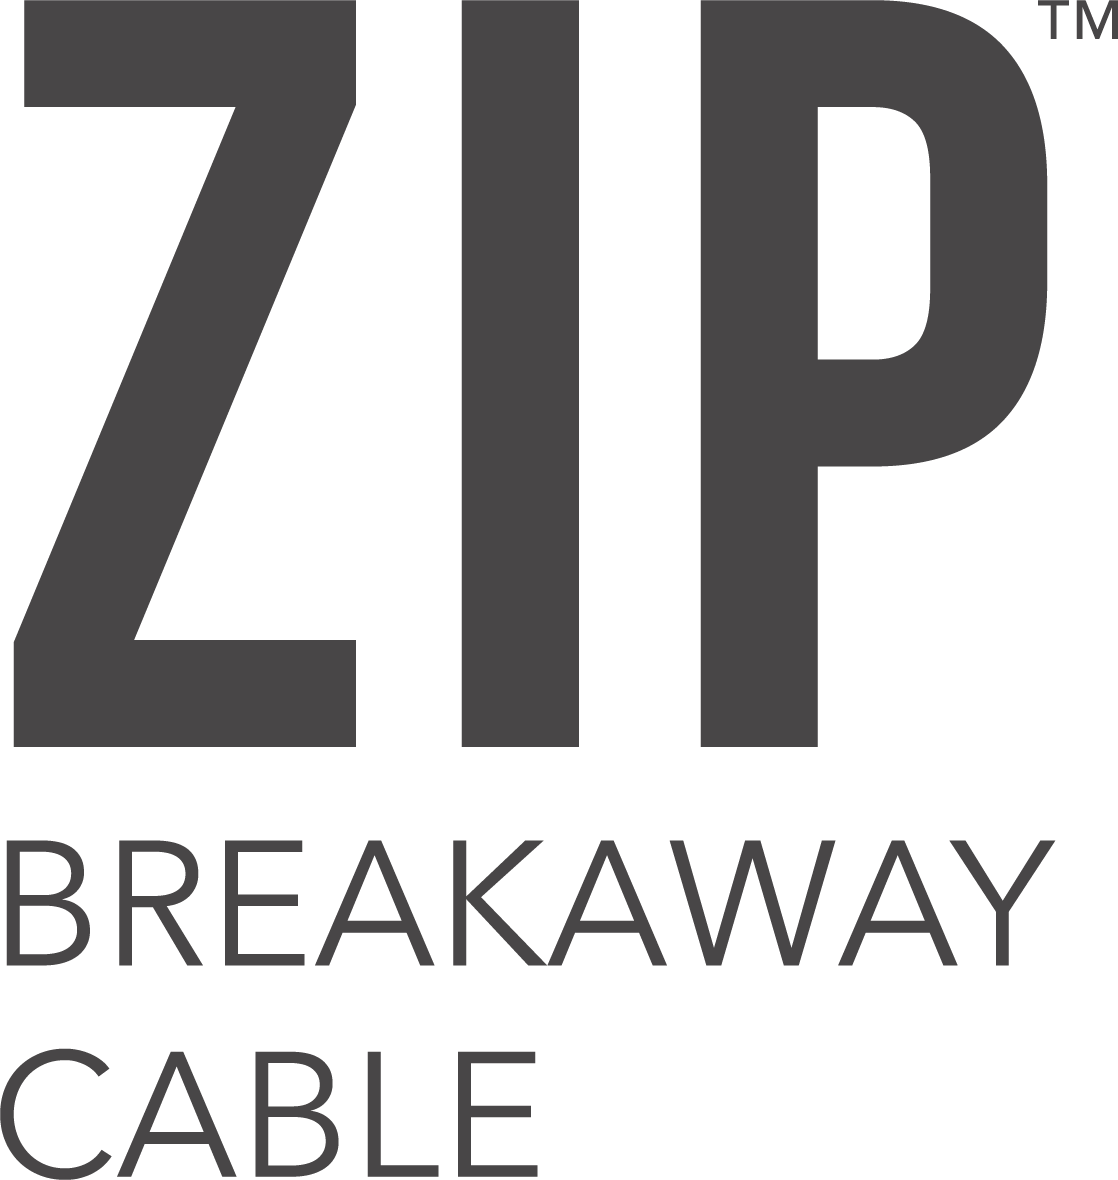 ZIP™ Breakaway Cable